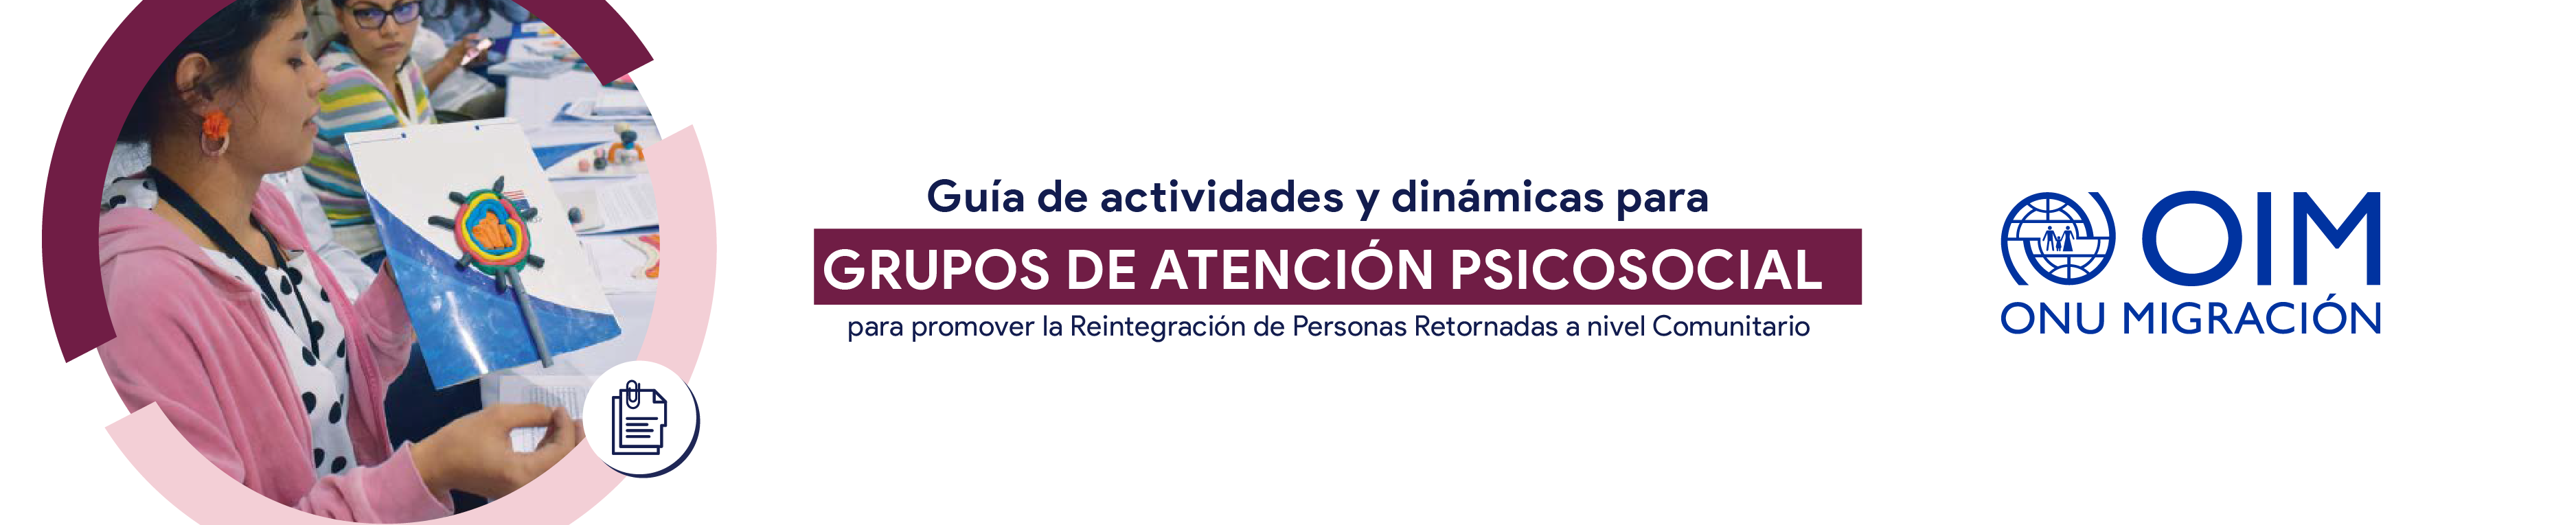 Guía de actividades y dinámicas para grupos de atención psicosocial para promover la Reintegración de Personas Retornadas a nivel Comunitario. 